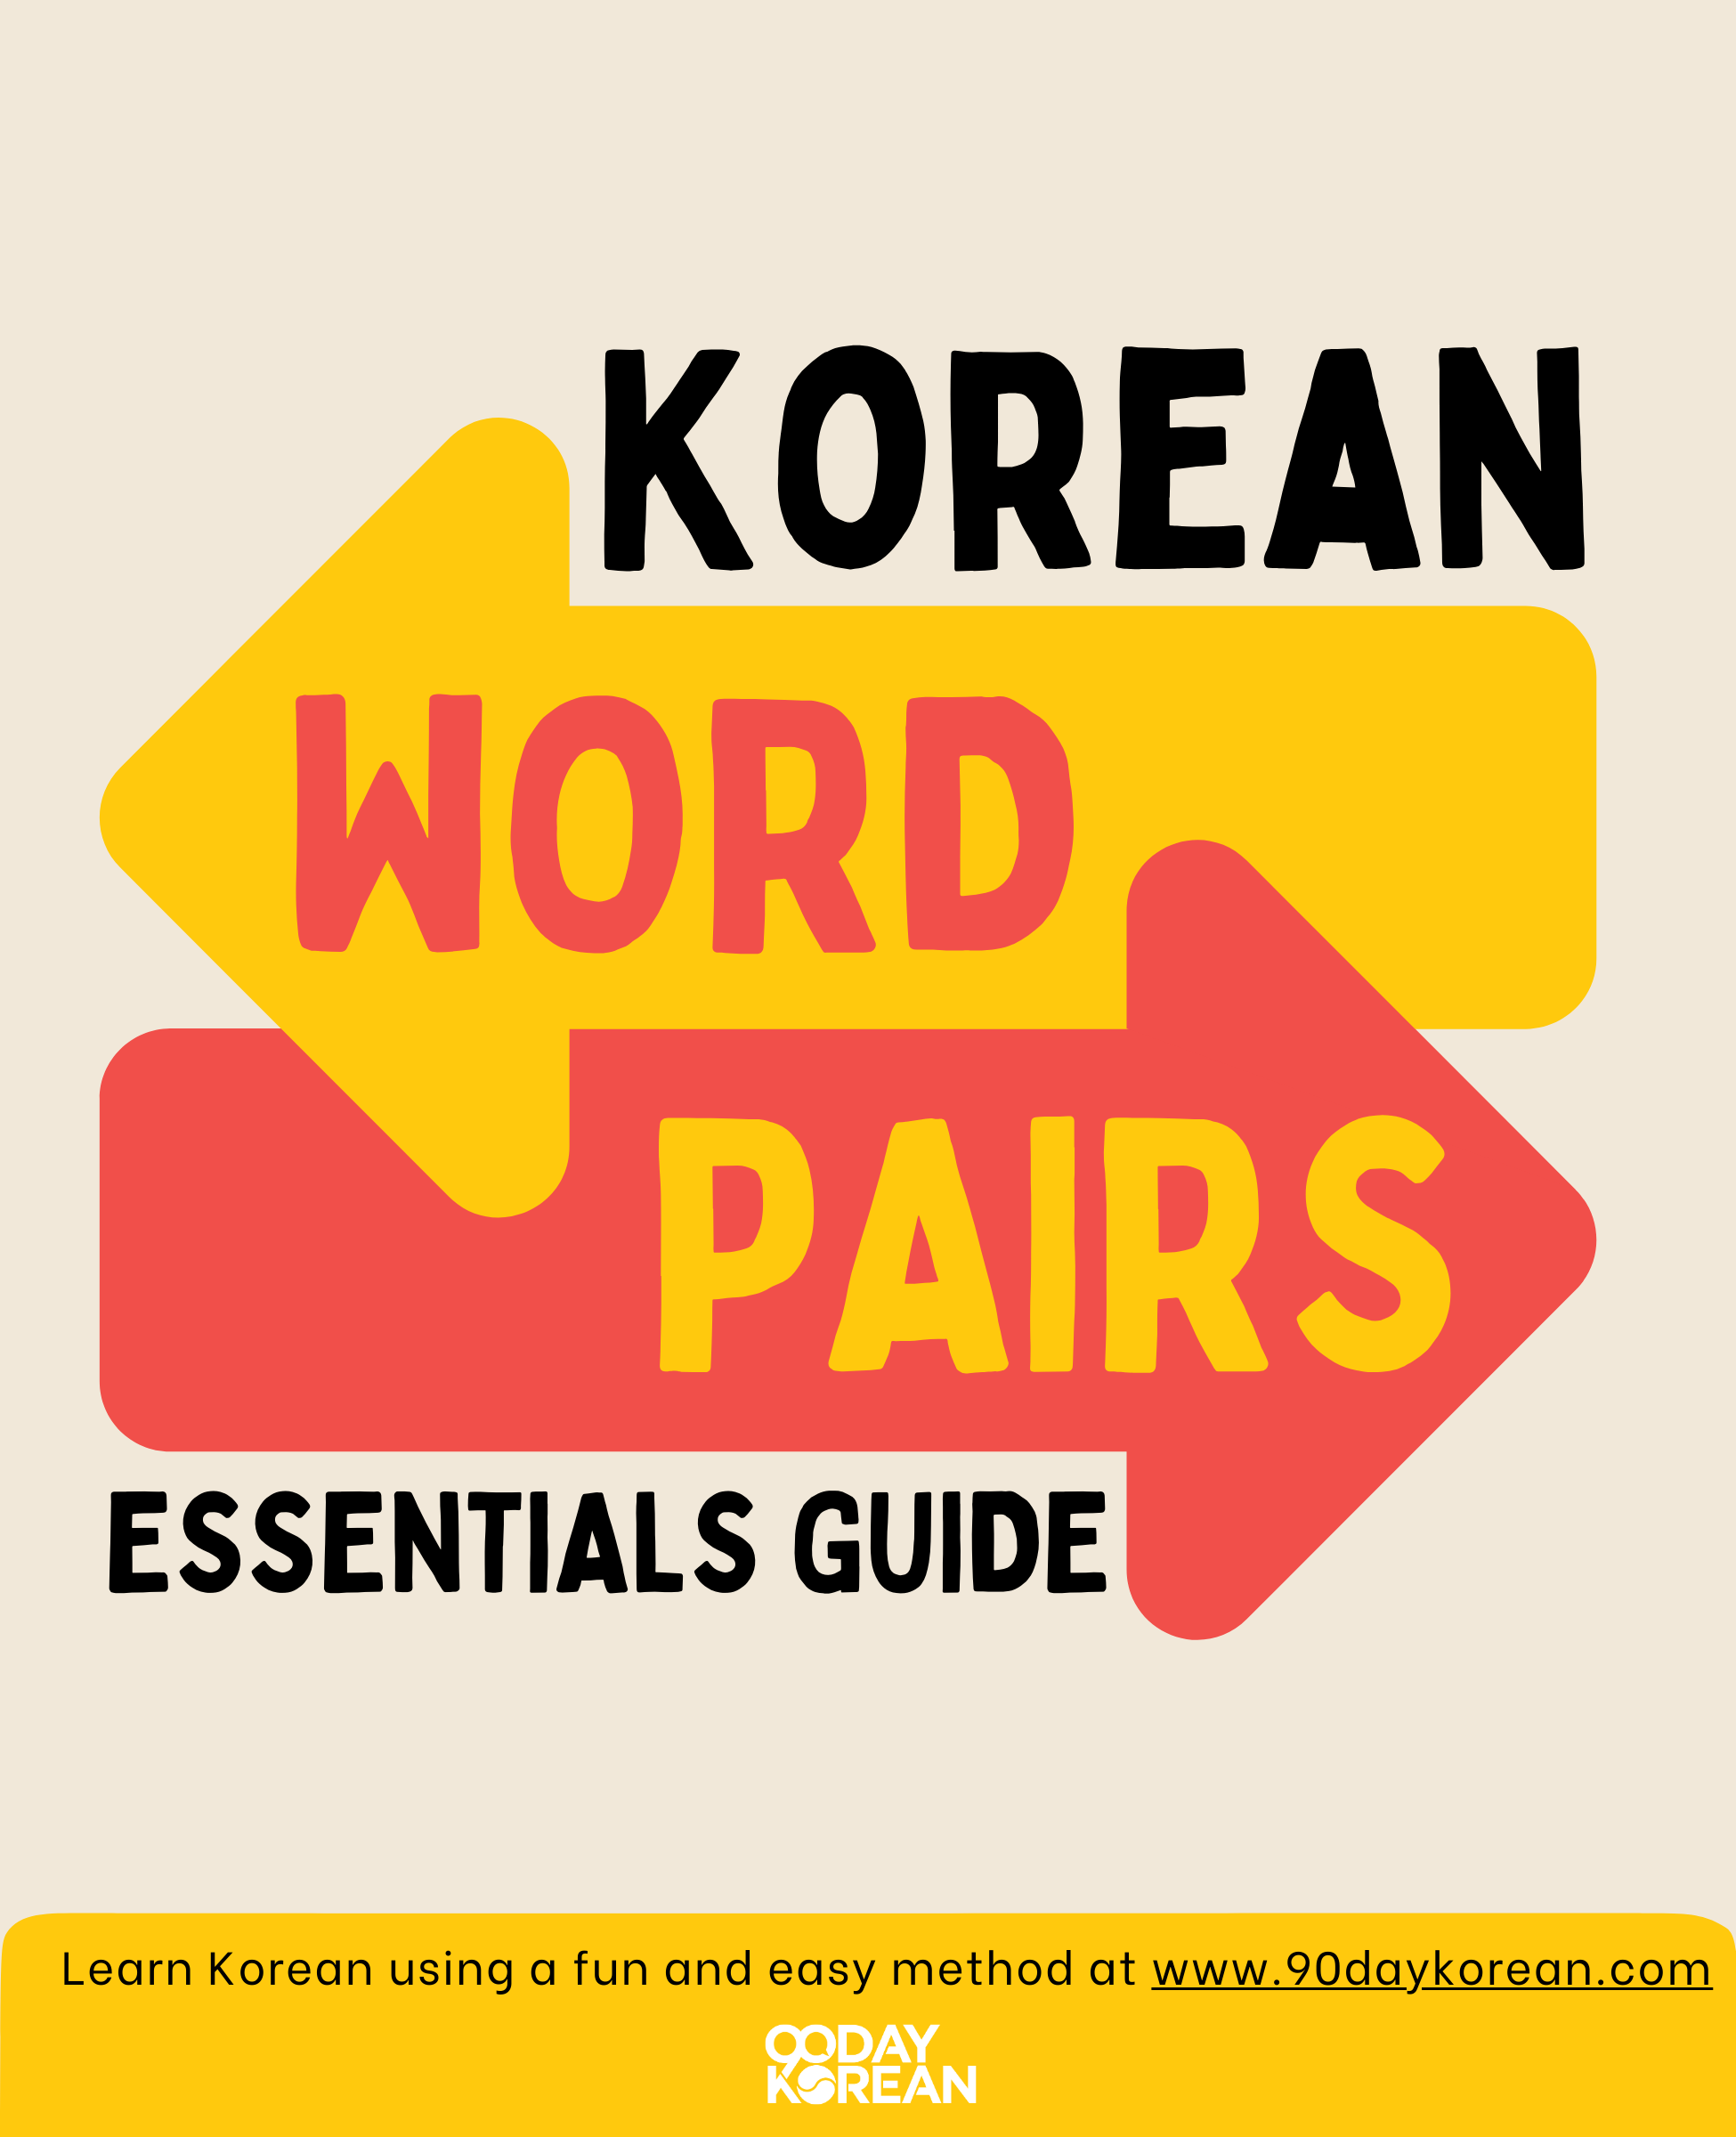 Bonus PDF - Korean Word Pairs Essentials Guide